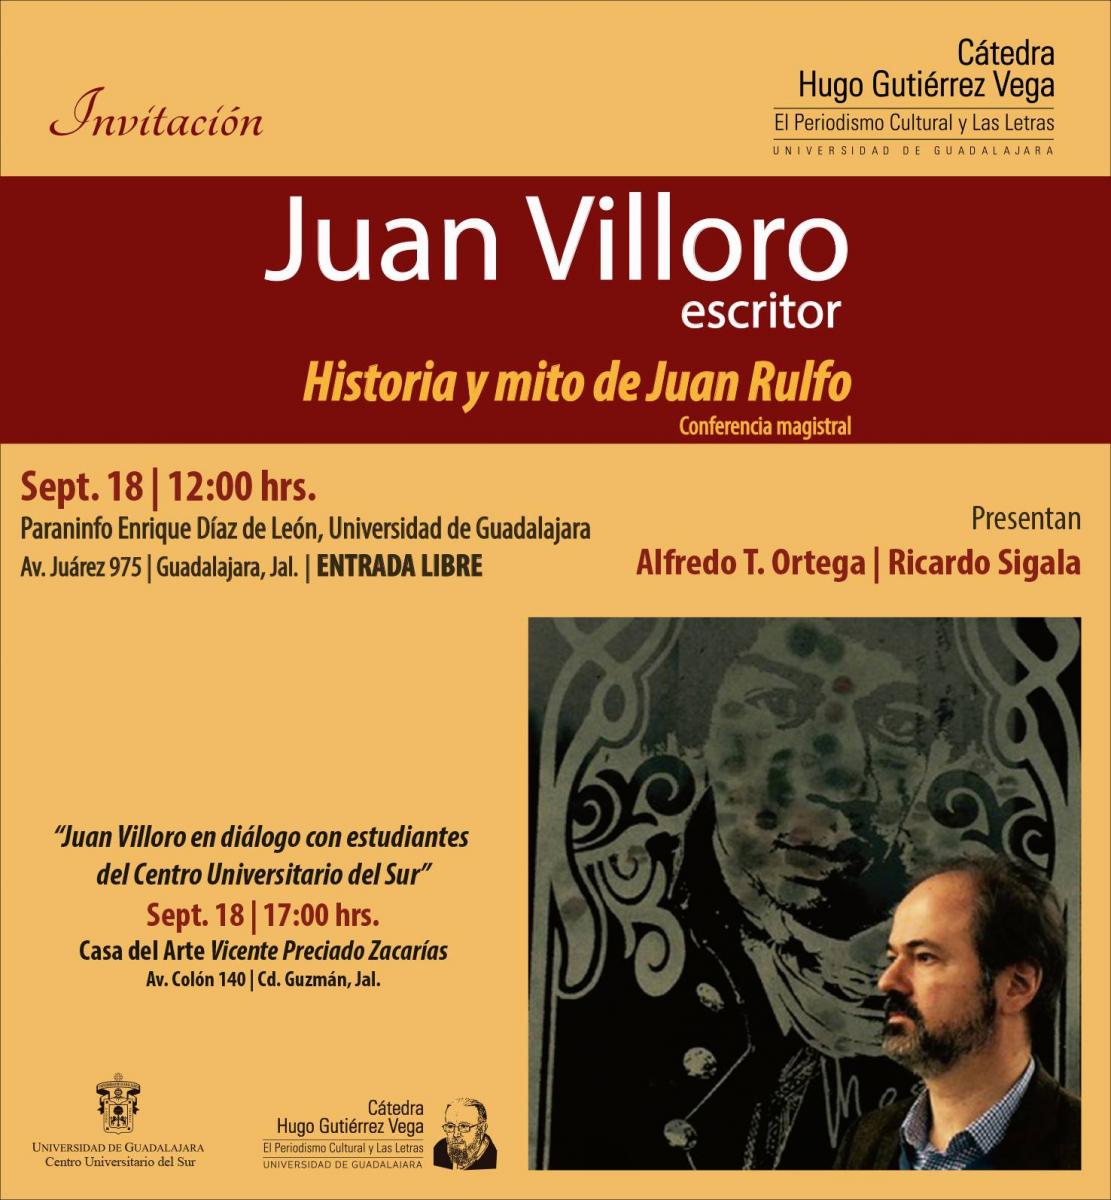 Invitacion a la conferencia magistral Historia y mito de Juan Rulfo